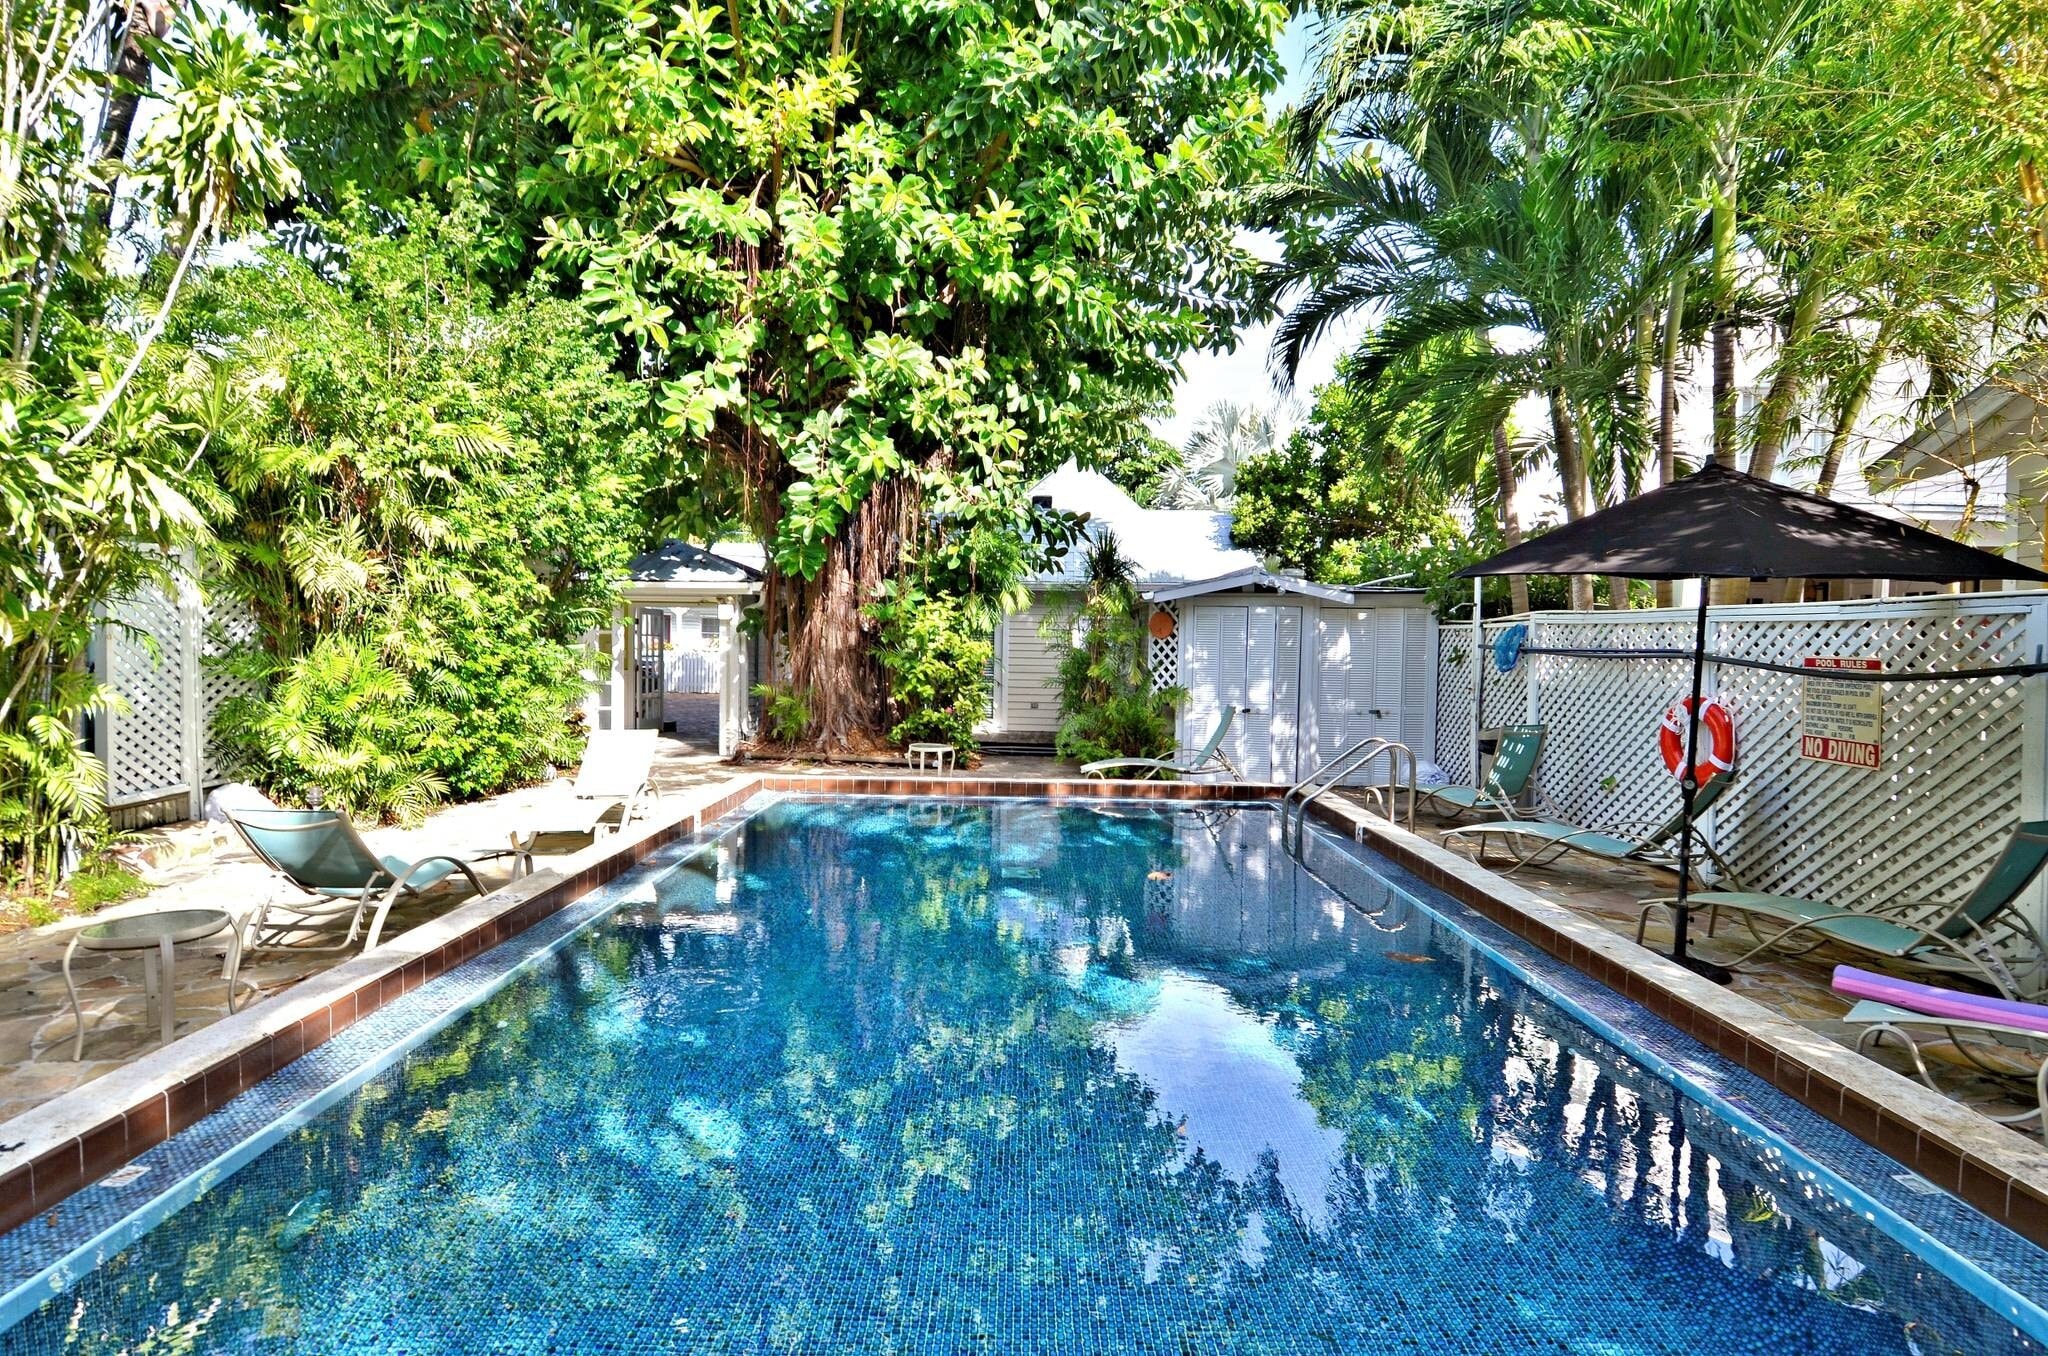 Make a splash in your shared backyard pool.